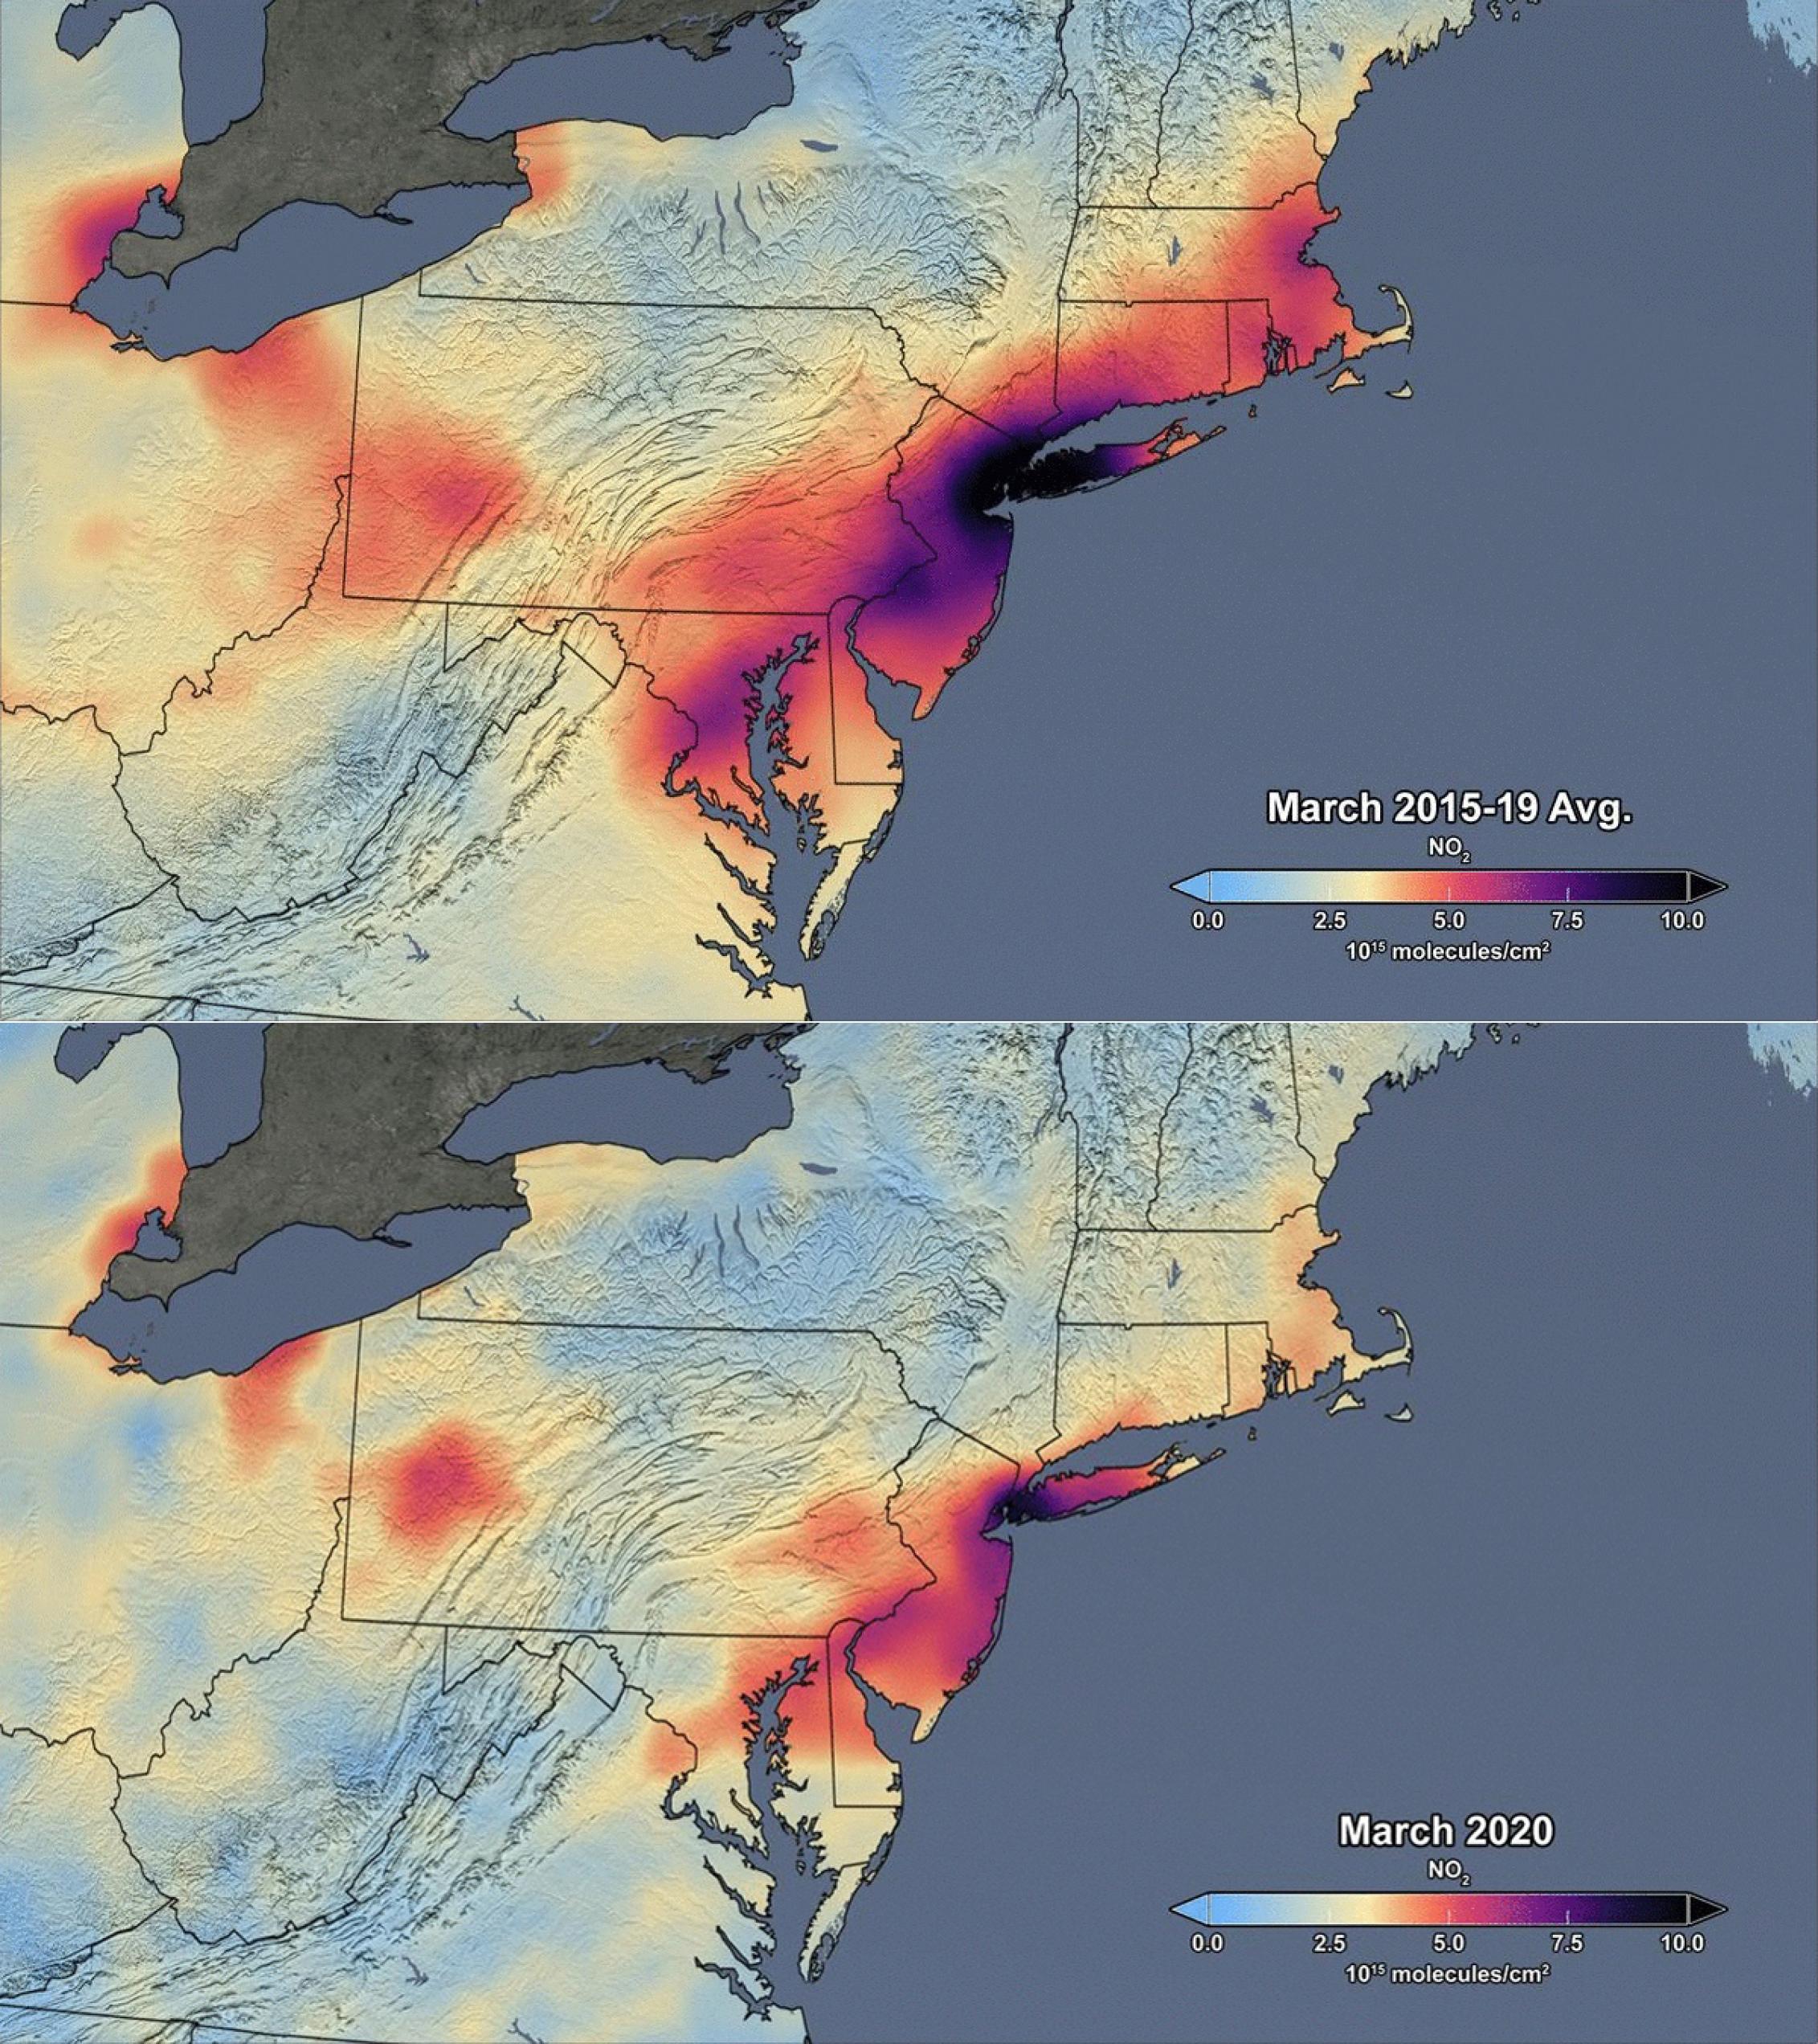 Eine Karte vom Osten der USA, oben für März 2019, unten für März 2020. In Rot und Braun sind Messwerte für den Luftschadstoff NO2 eingezeichnet – je intensiver die Farbe, desto höher die Belastung. Es ist deutlich zu erkennen, dass zum Beispiel in der Region New York, dieses Jahr wegen des Lockdowns viel weniger Schadstoffe in der Luft haben als im vorigen.